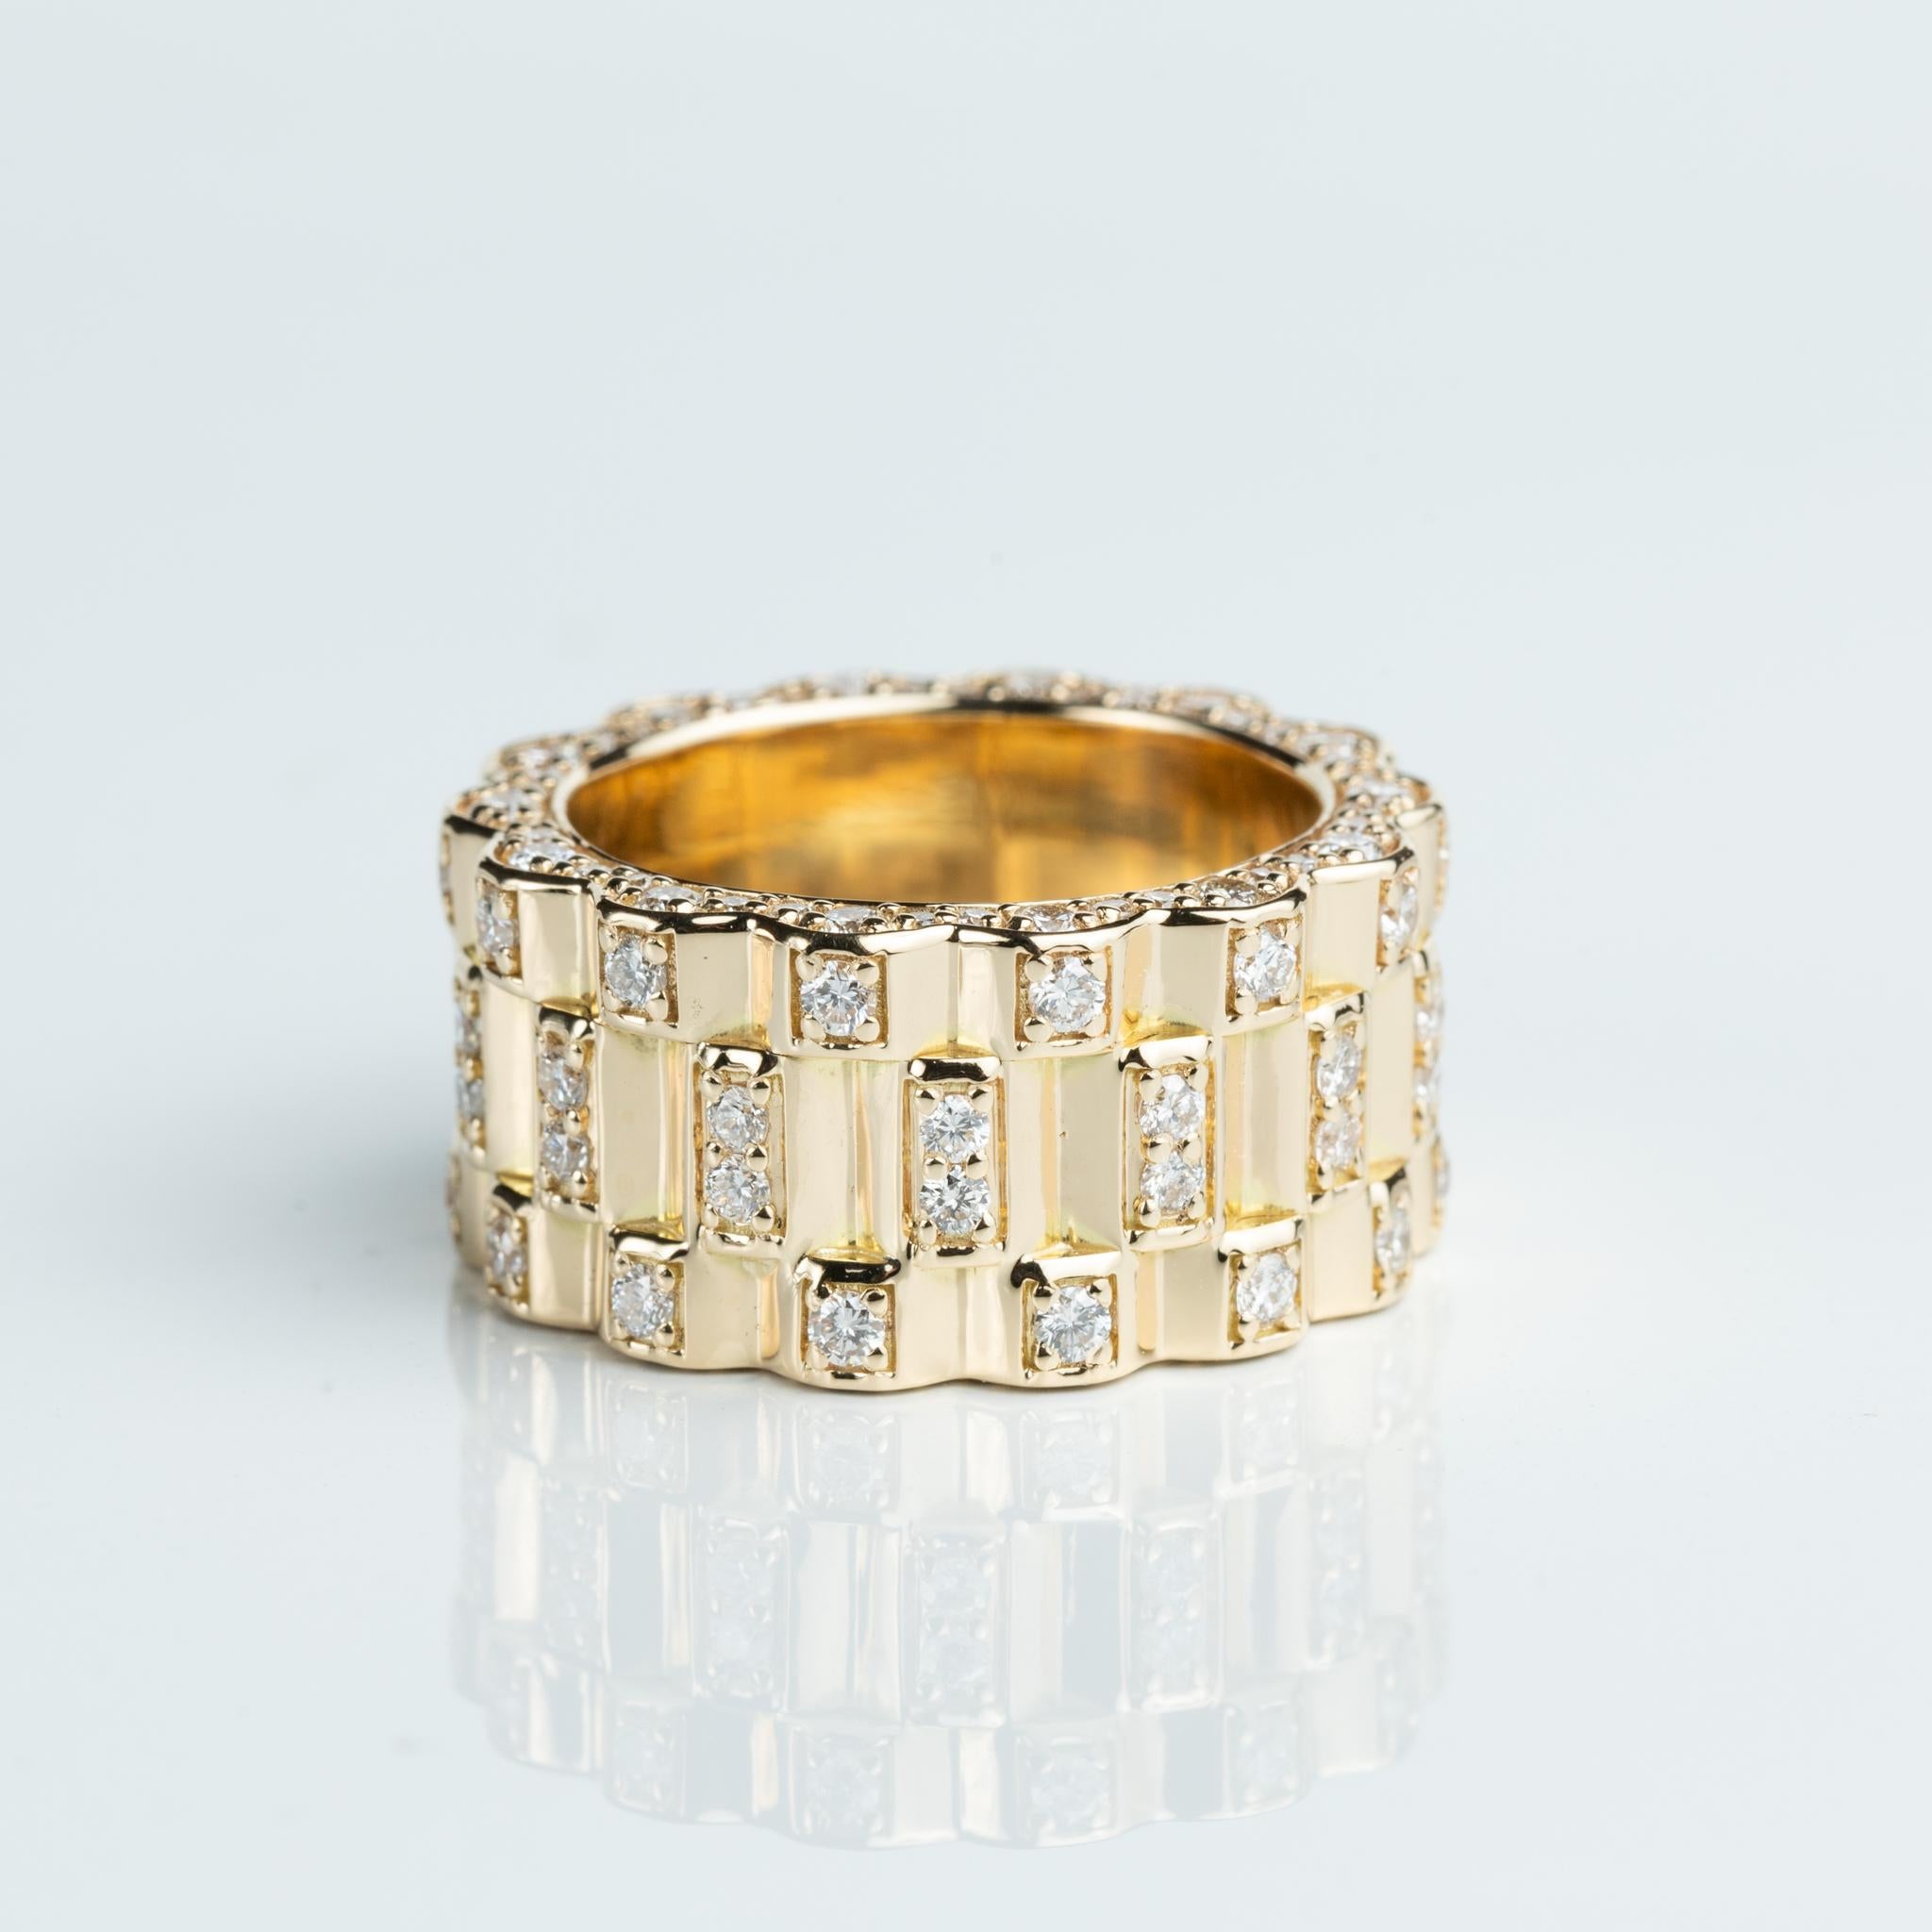 Herren-Hochzeitsring mit Diamanten aus 18 Karat Gelbgold, rosafarbener Ring 

Erhältlich in 18k Gelbgold.

Das gleiche Design kann auch mit anderen Edelsteinen auf Anfrage hergestellt werden.

Einzelheiten zum Produkt:

- Massivgold (18k Gelb)

-